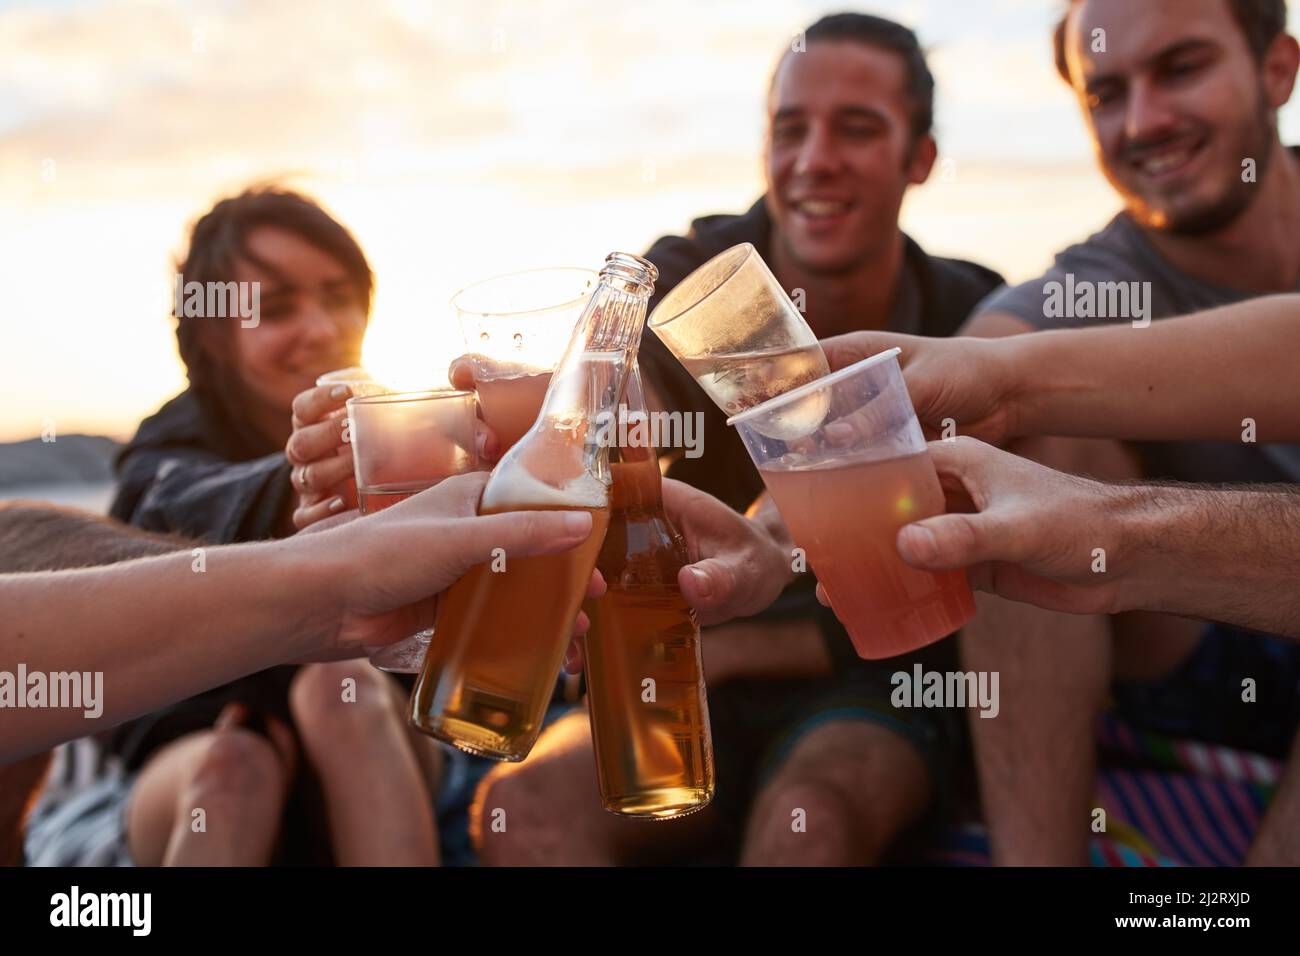 Jeune, sauvage et libre. Prise de vue d'un groupe de jeunes amis heureux en dégustant leurs boissons tout en se relaxant sur la plage. Banque D'Images